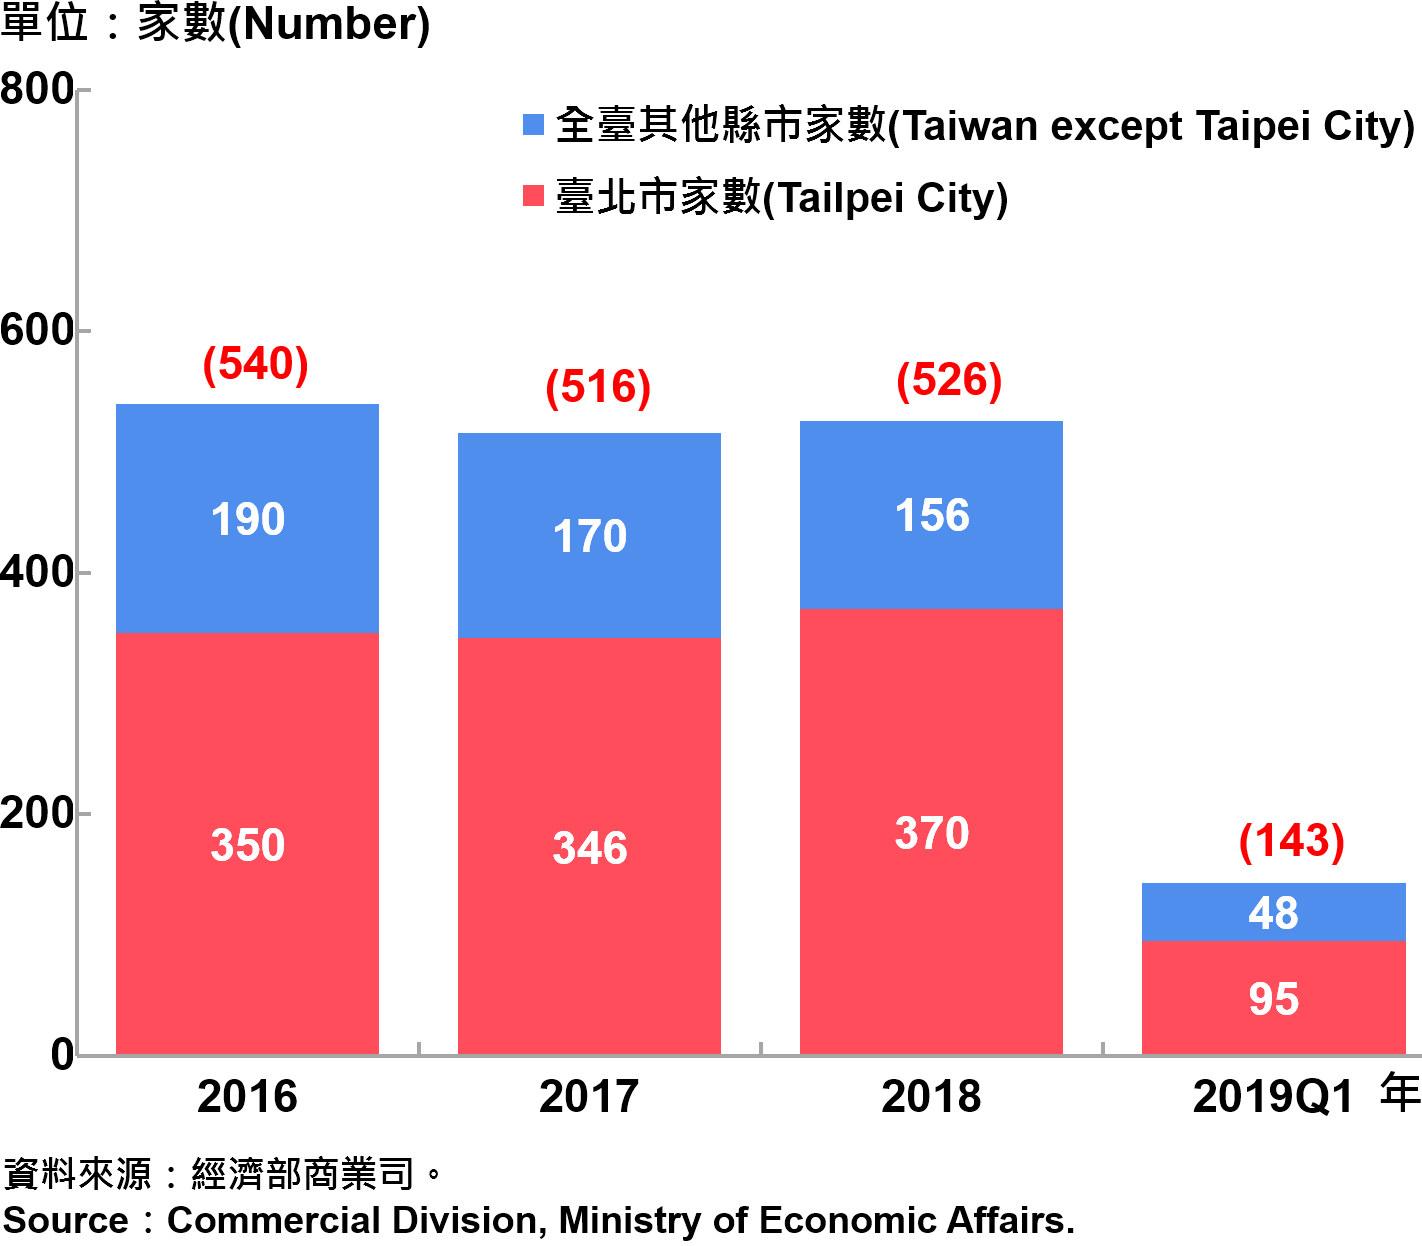 臺北市外商公司新設立家數—2019Q1 Number of Newly Established Foreign Companies in Taipei City—2019Q1